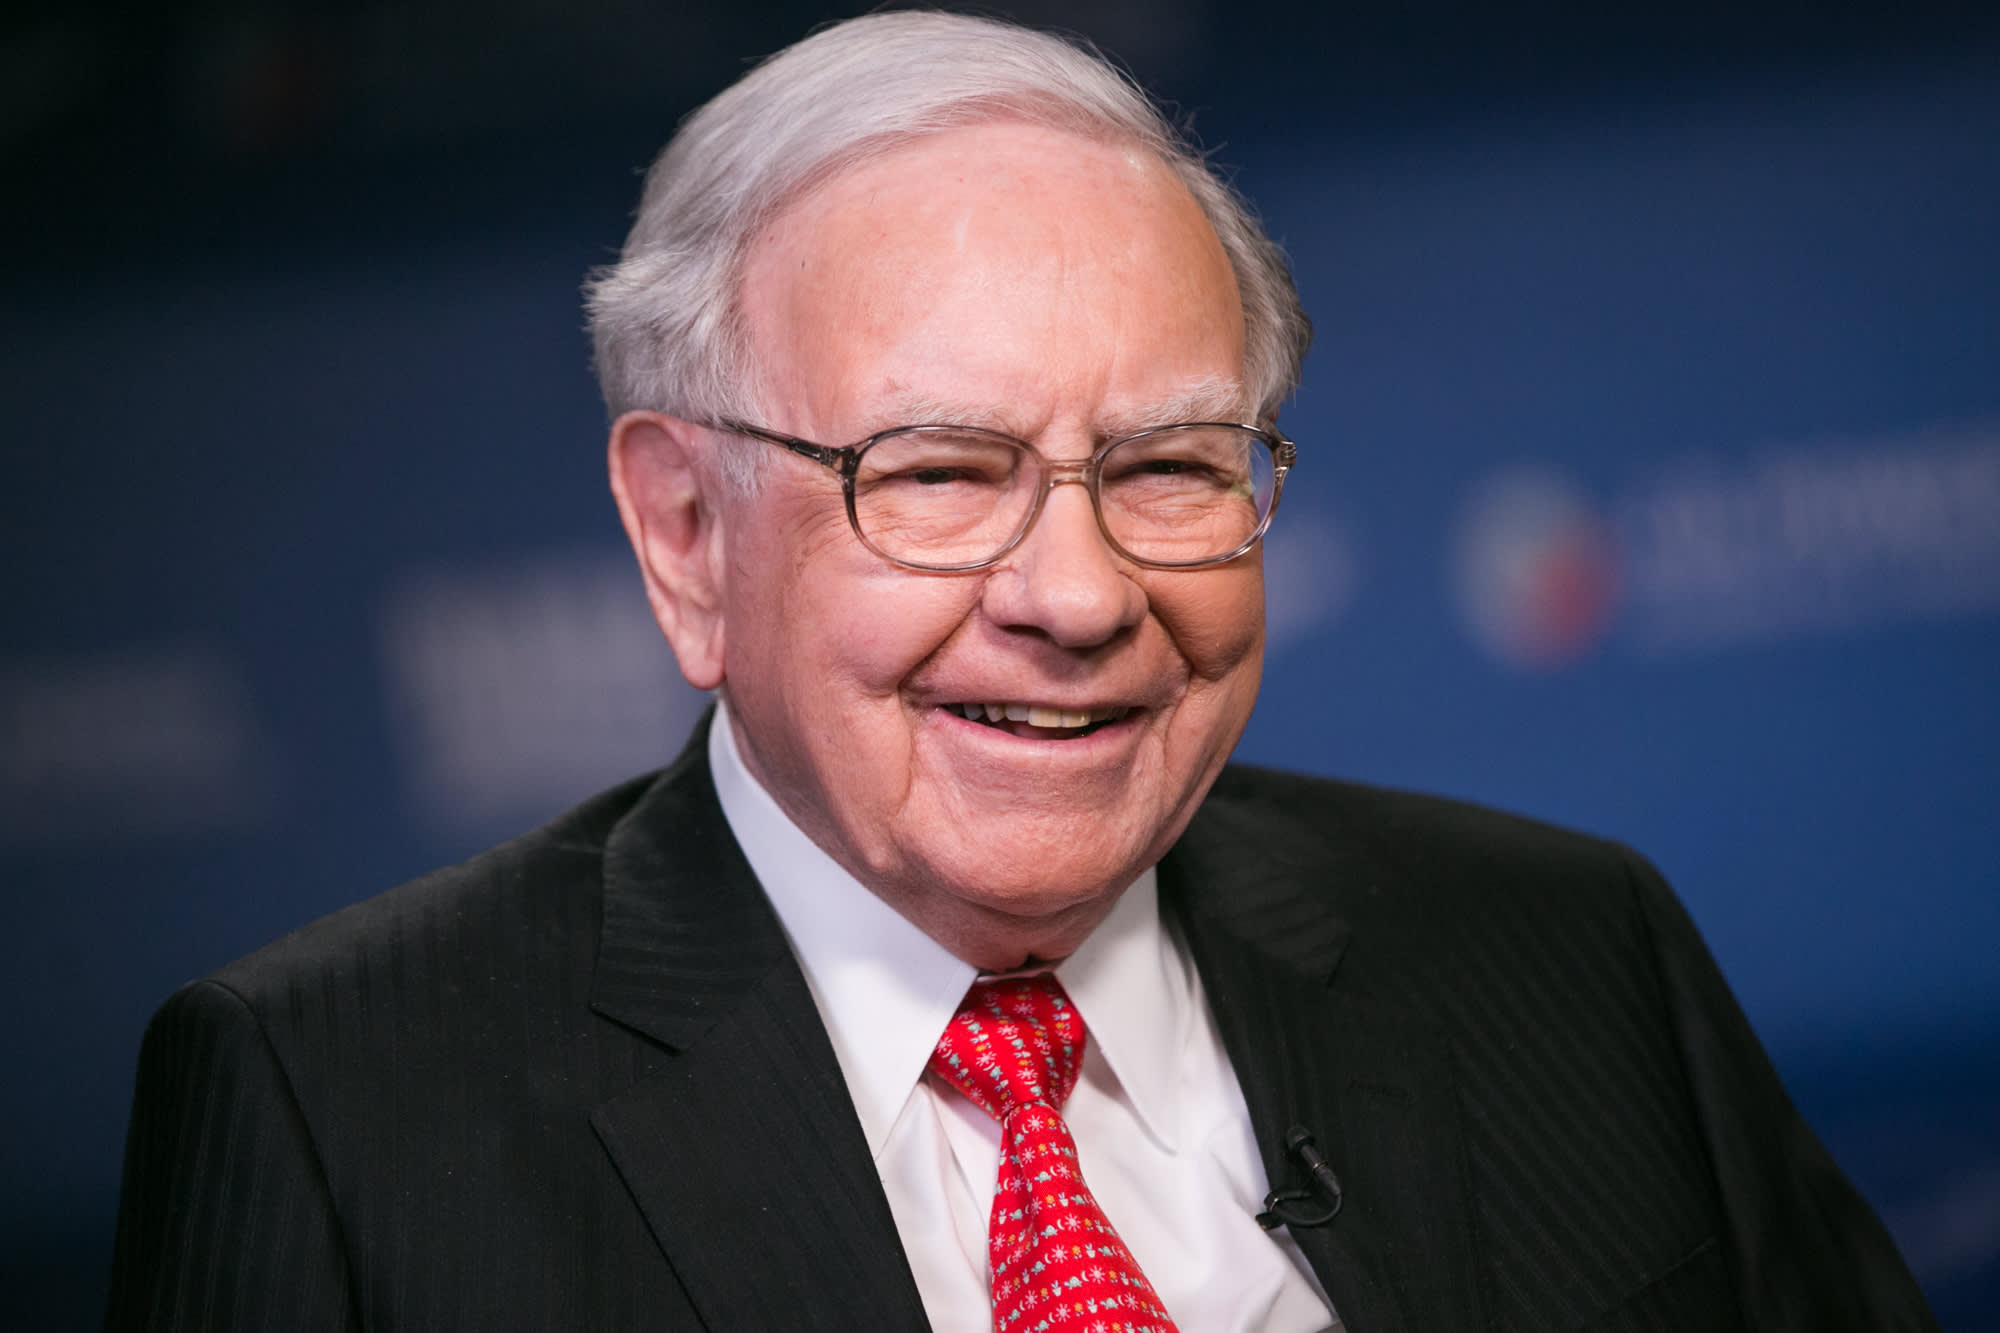 Câu chuyện thần chứng khoán Warren Buffett lỗ khủng gần 50 tỷ USD thời dịch bệnh và bài học làm giàu: biết phanh quan trọng hơn tăng tốc - Ảnh 1.